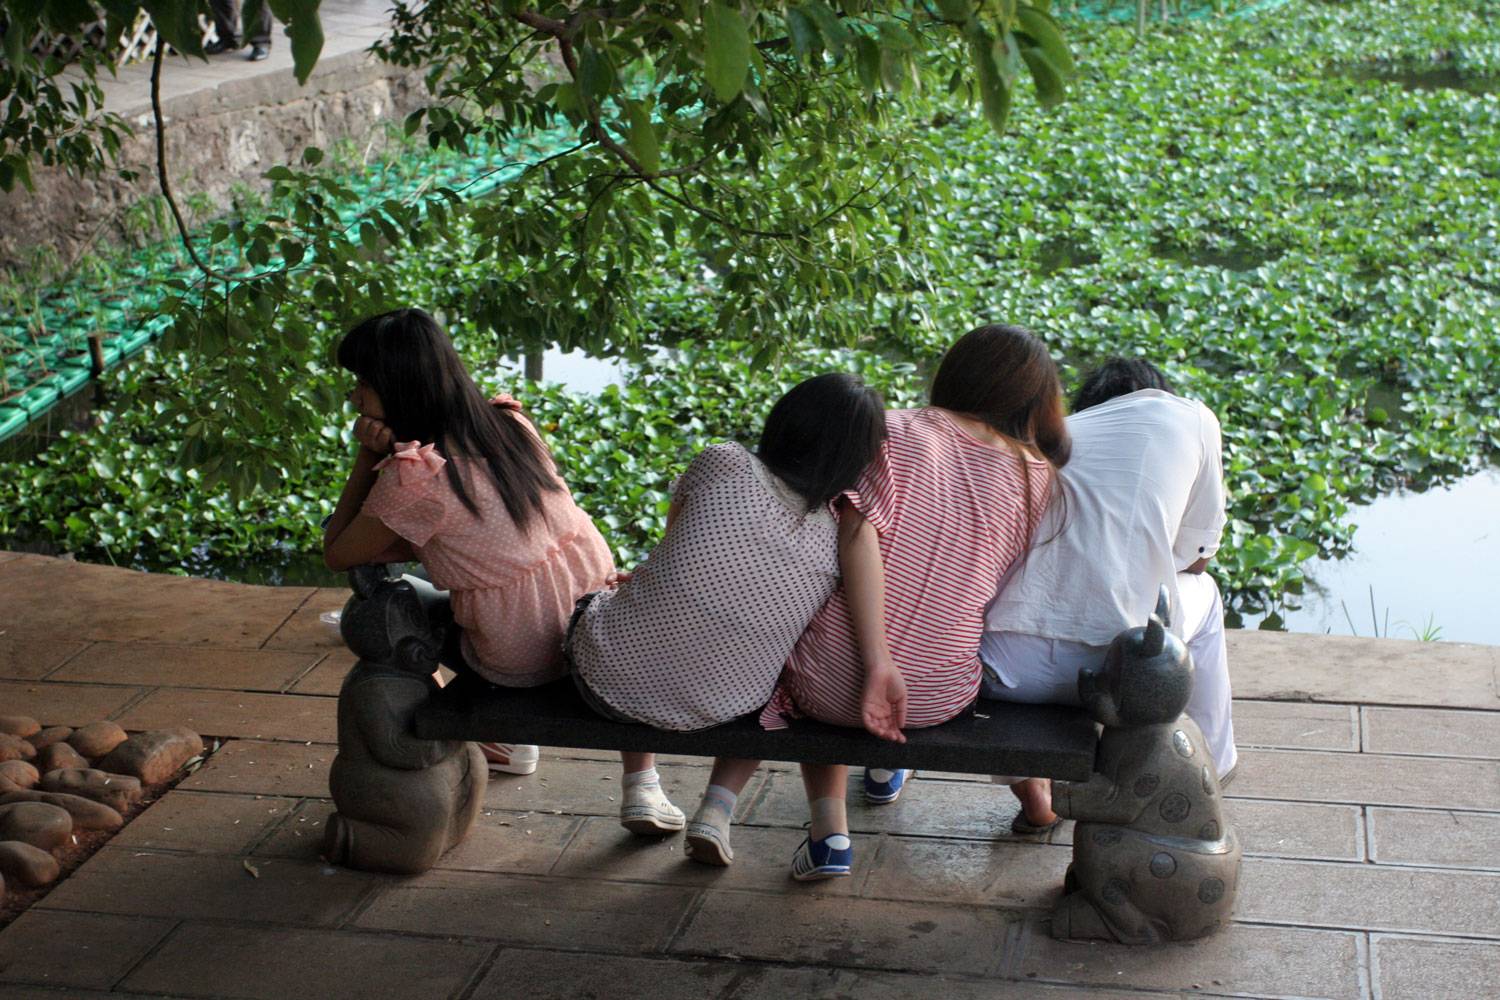 Jeunes sur un banc face au lac Émeraude, Kunming (Chine)